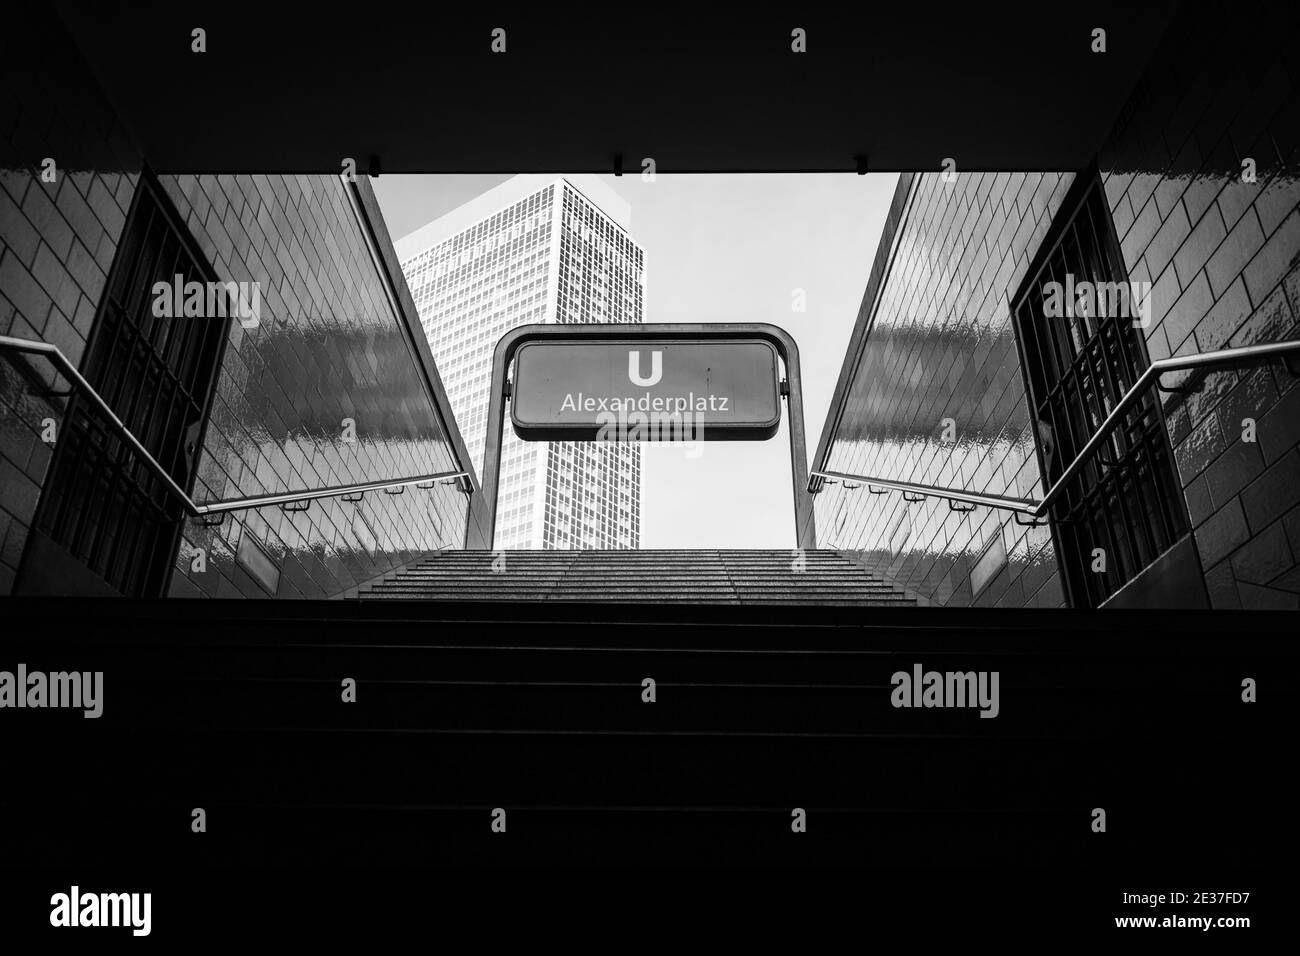 Treppen von der U-Bahnstation alexanderplatz Stockfoto